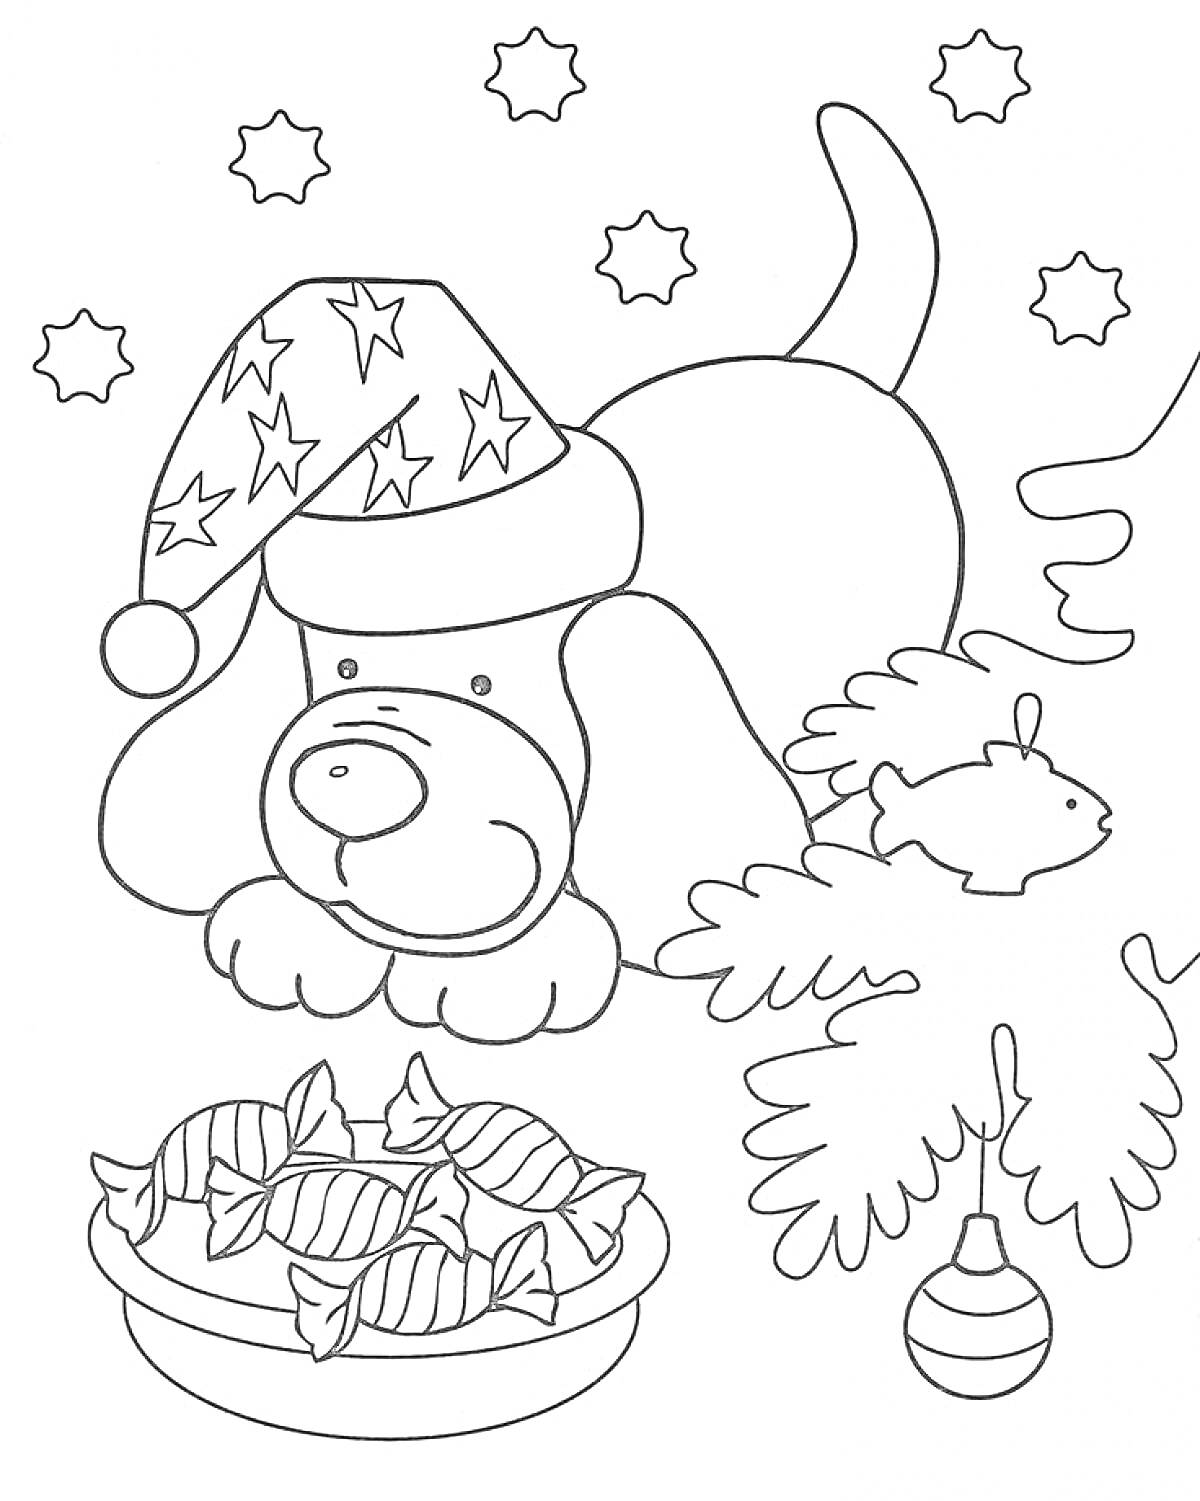 Собака в новогодней шапке, елочные игрушки, угощение конфетами и падающий снег